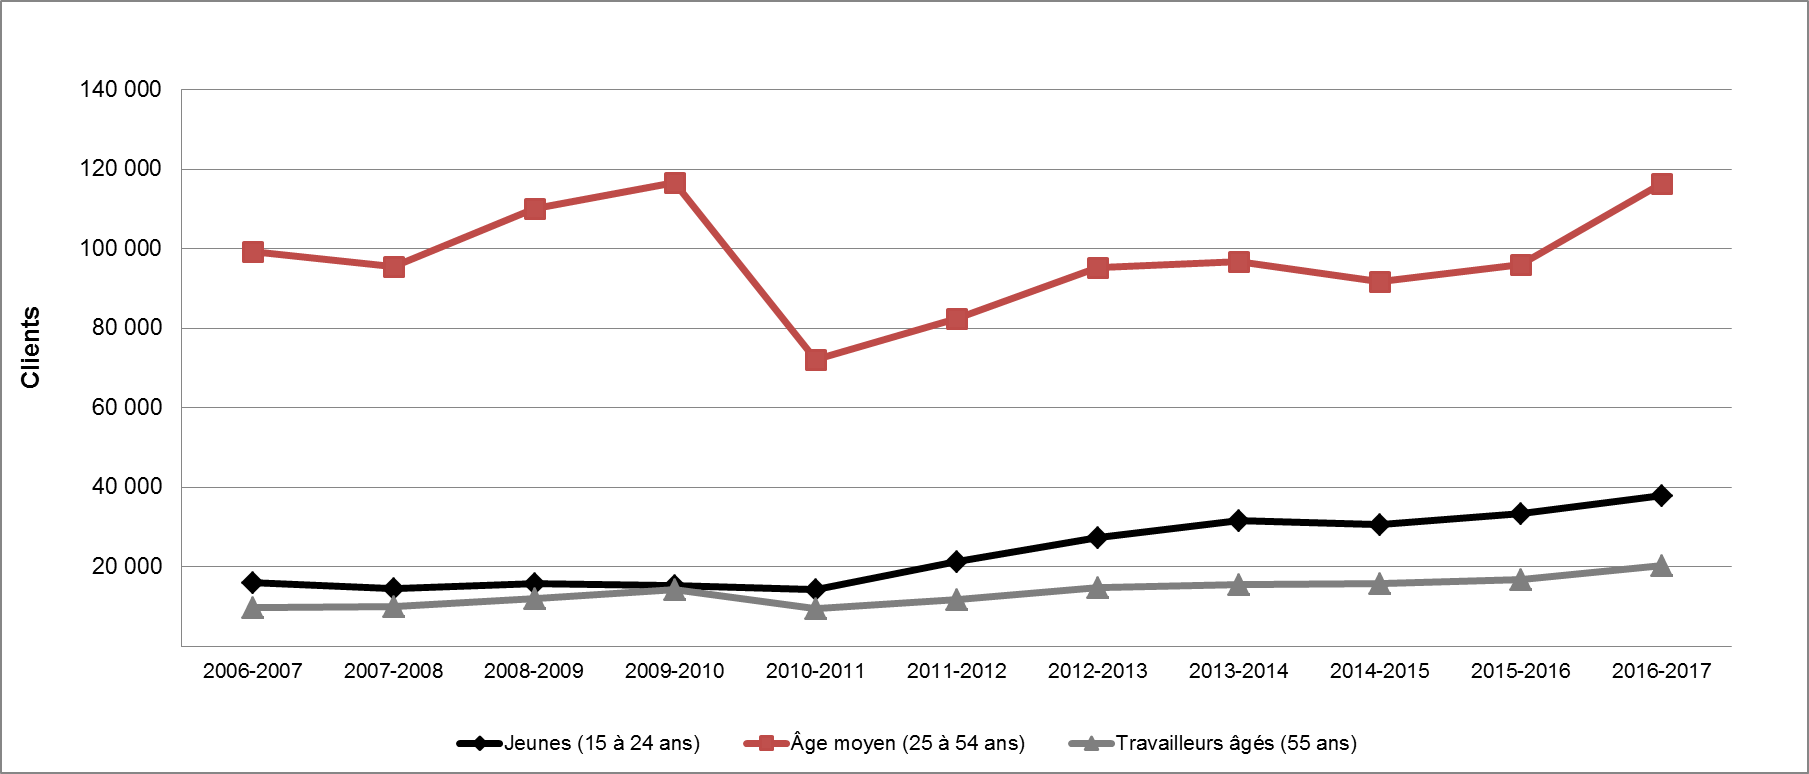 Graphique 23 - Répartition des clients des PEMS selon le groupe d'âge (2006-2007 à 2016-2017)